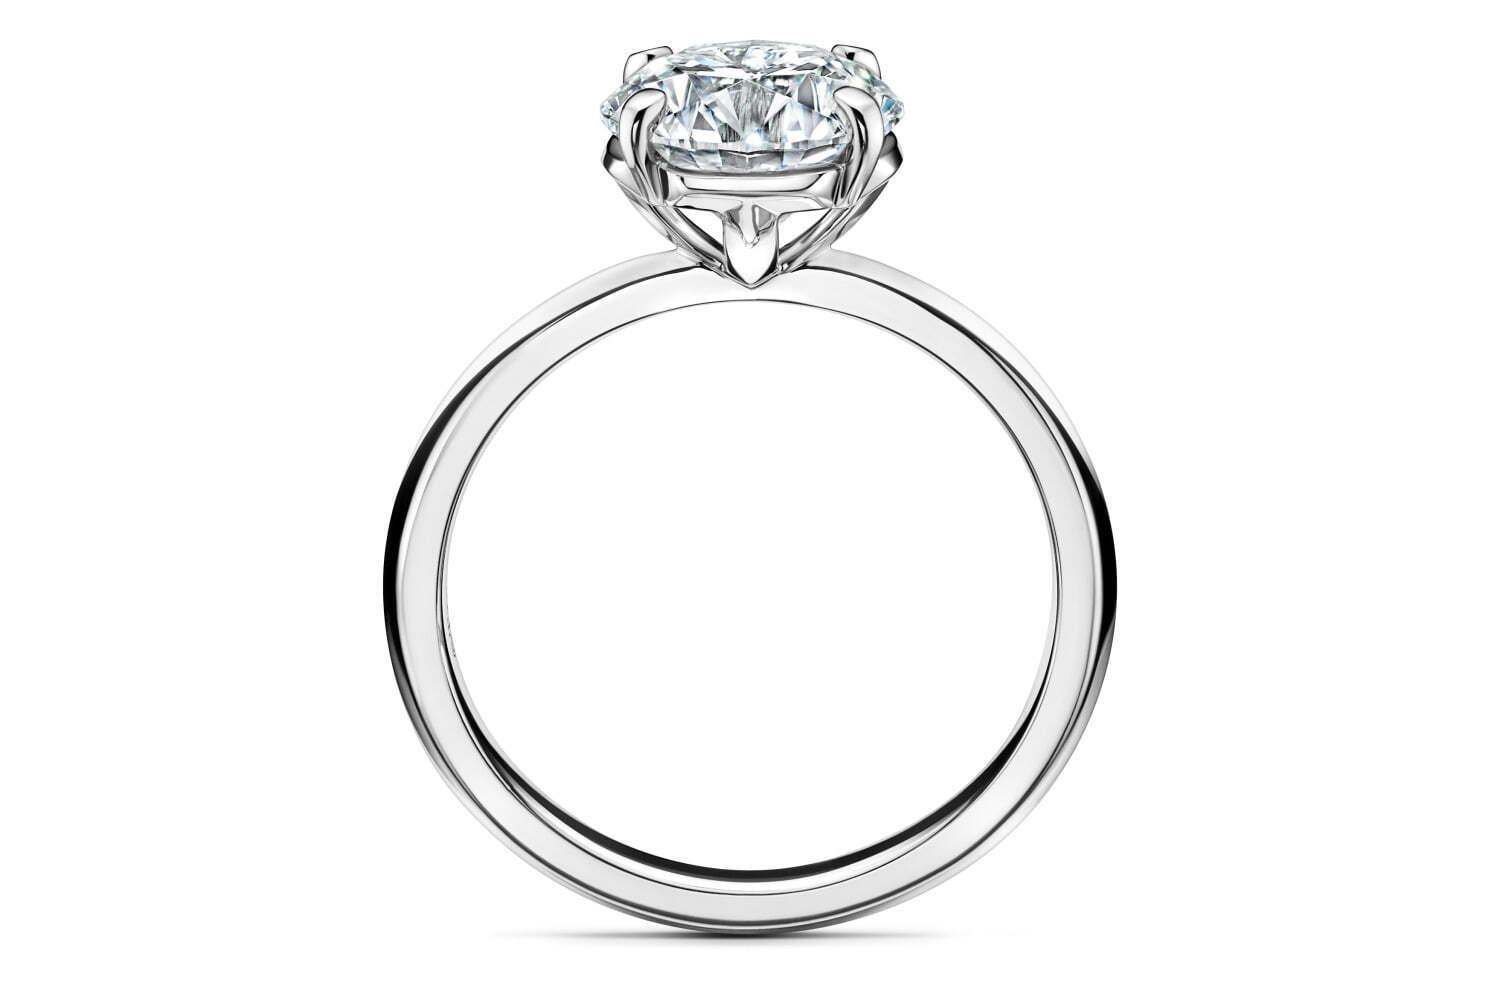 「ティファニー トゥルー」の新作婚約指輪、構築的な“T”モチーフでダイヤモンドをセット 